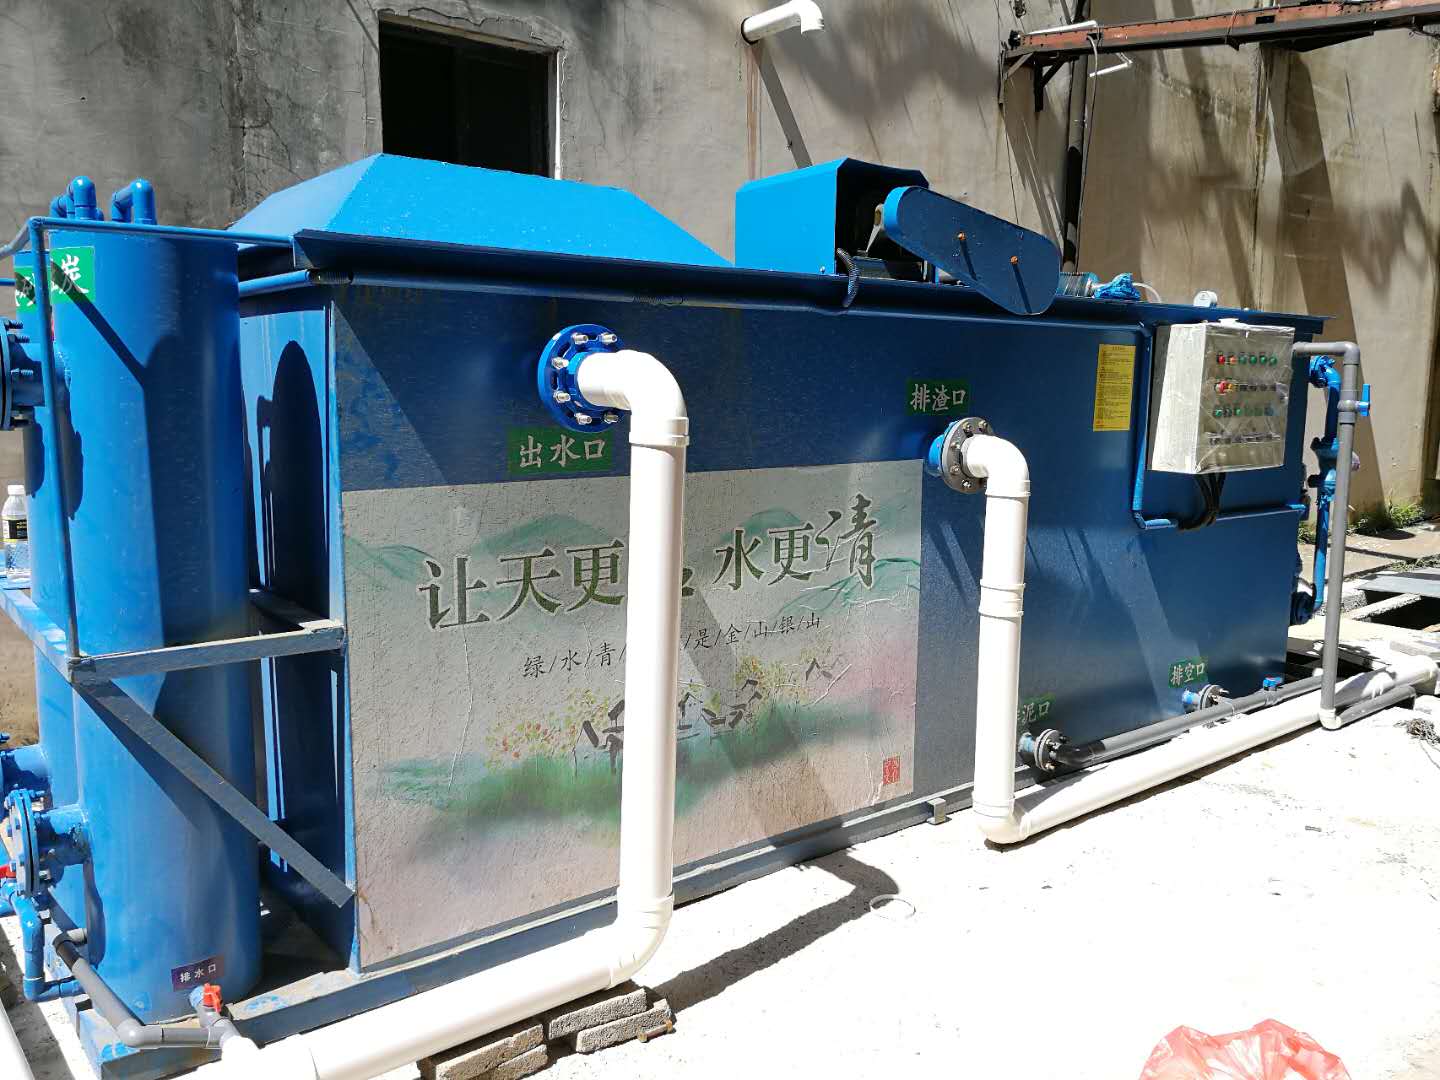 海口秀英豆制品加工厂10吨/d一体化污水处理设备